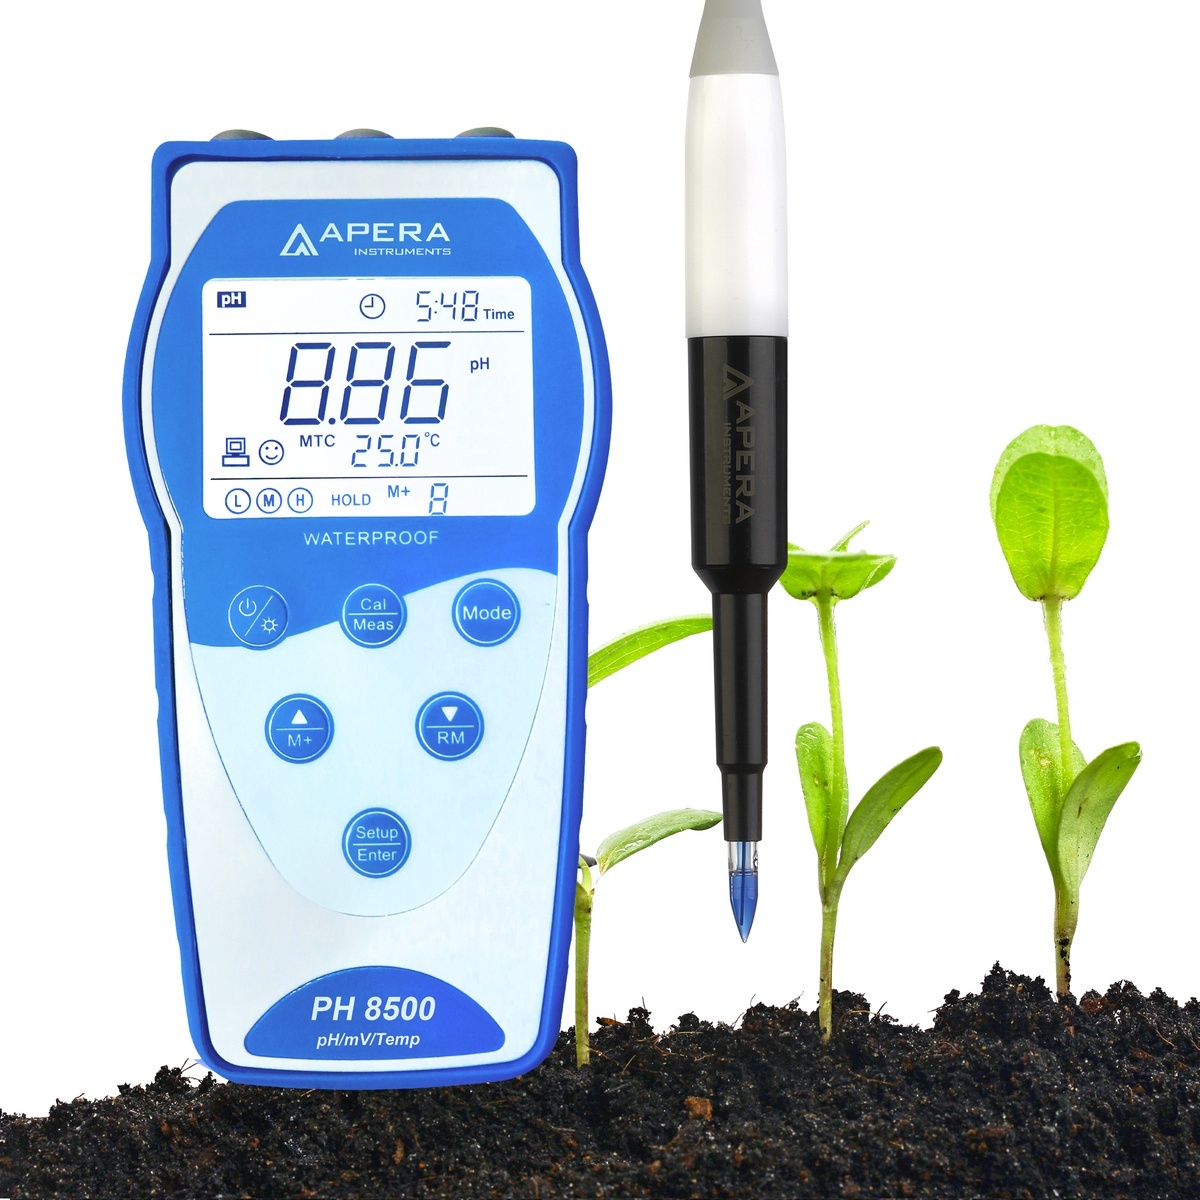 PH8500-SL 便携式土壤pH计/便携式土壤酸度计